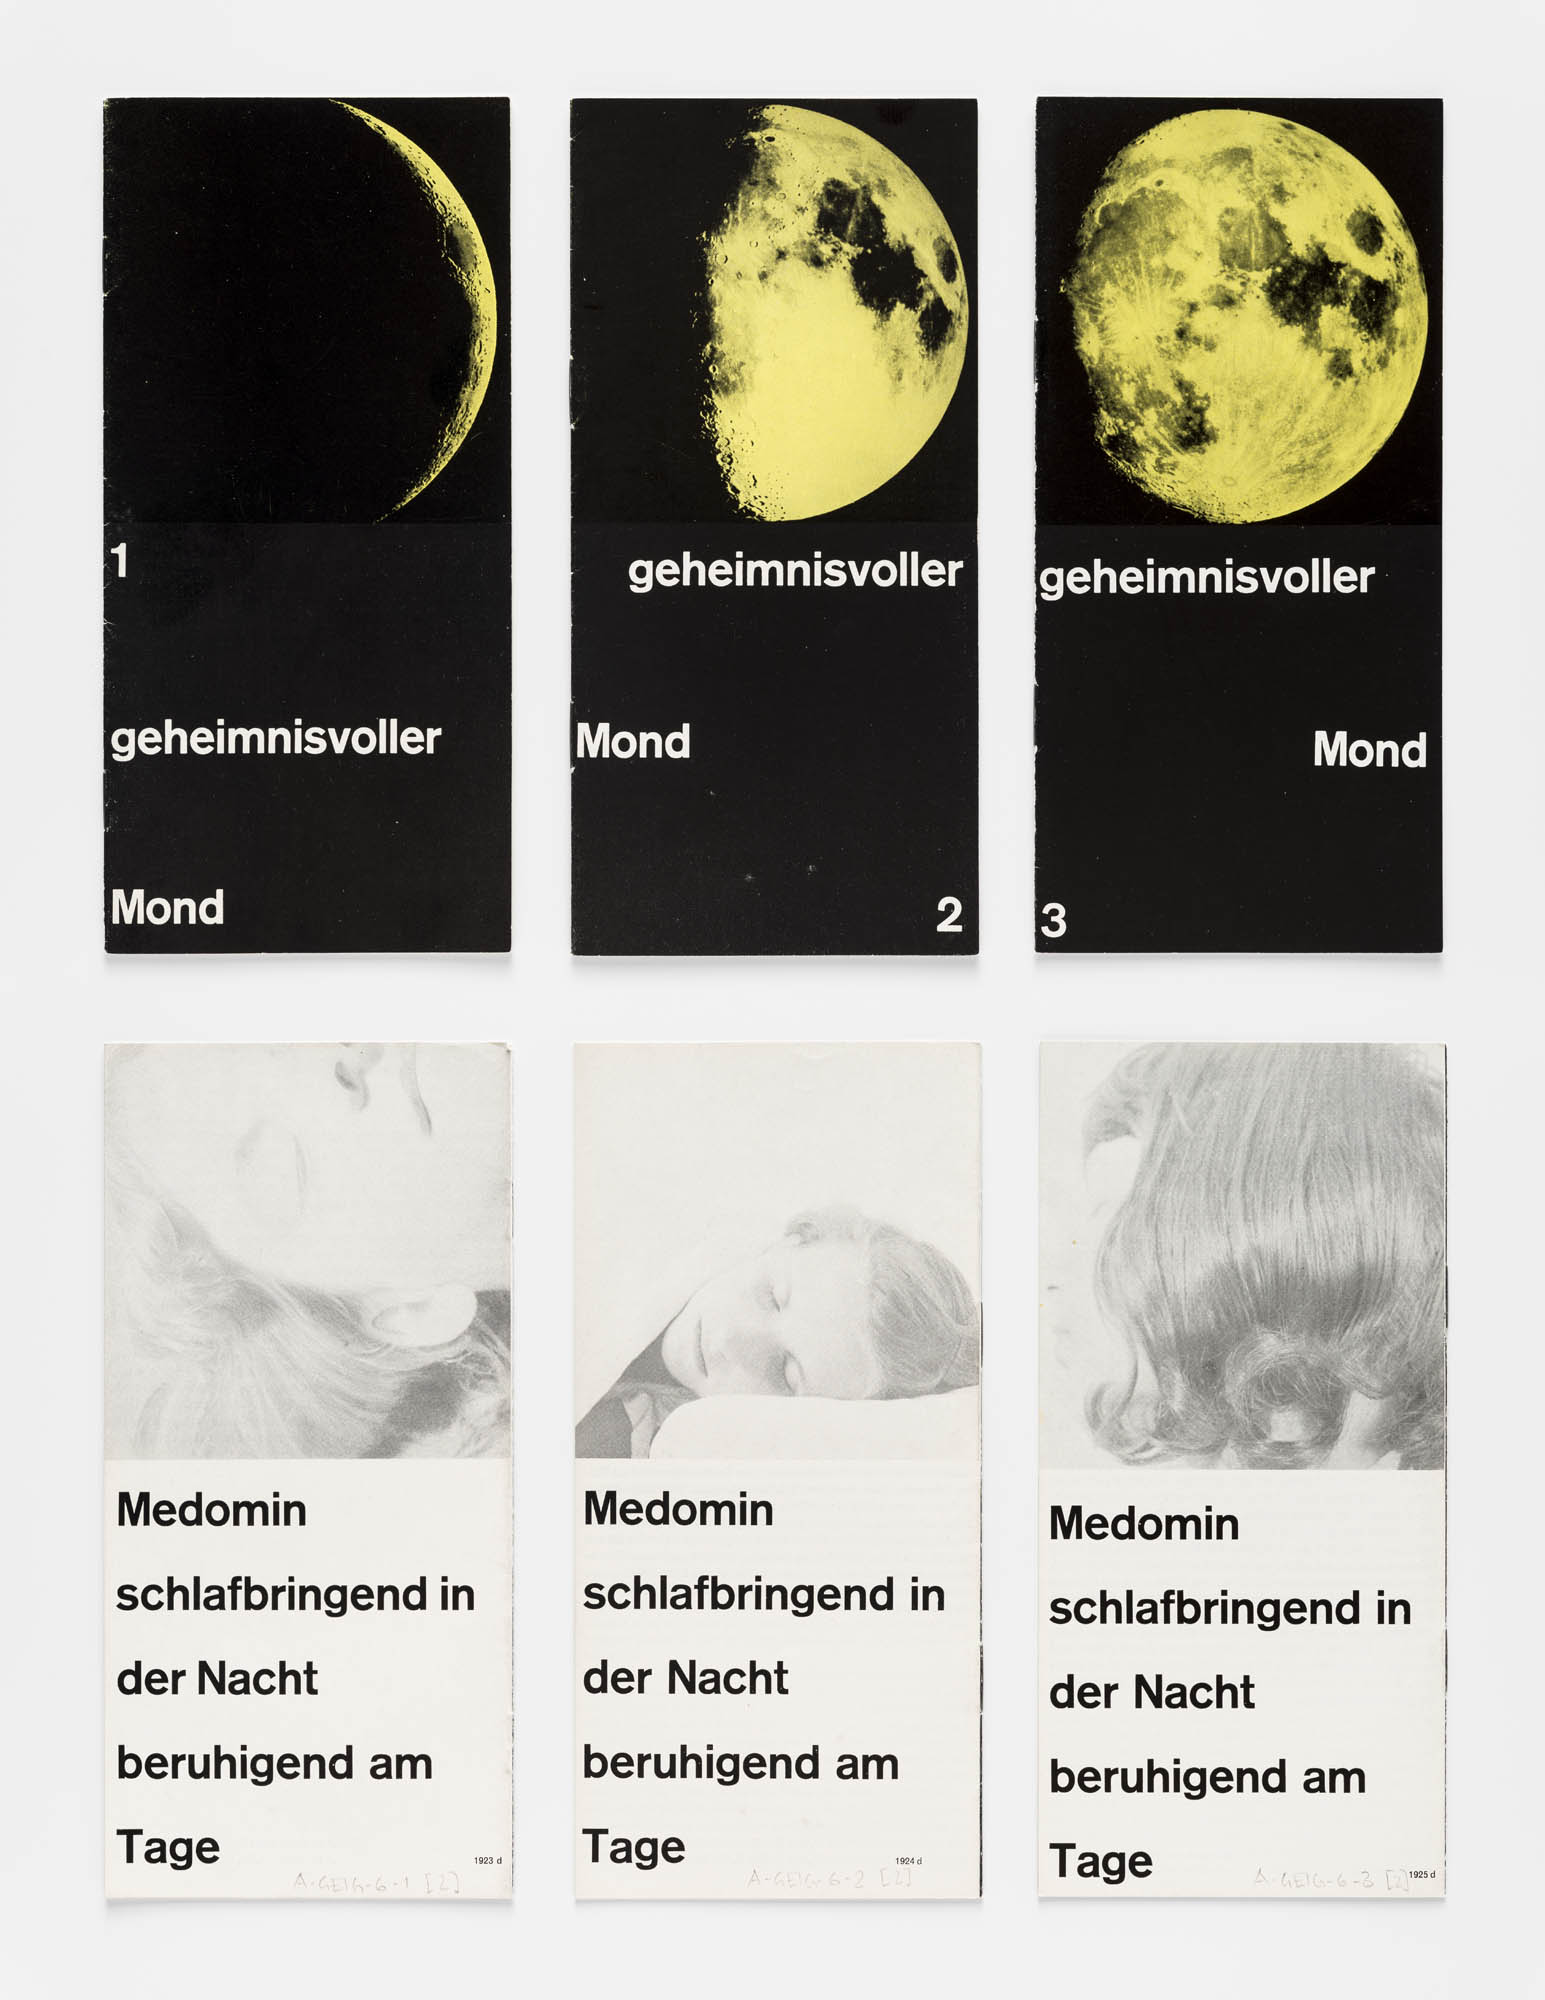 Geheimnisvoller Mond 1 – Medomin schlafbringend in der Nacht beruhigend am Tag Gérard Ifert Werbebroschüre